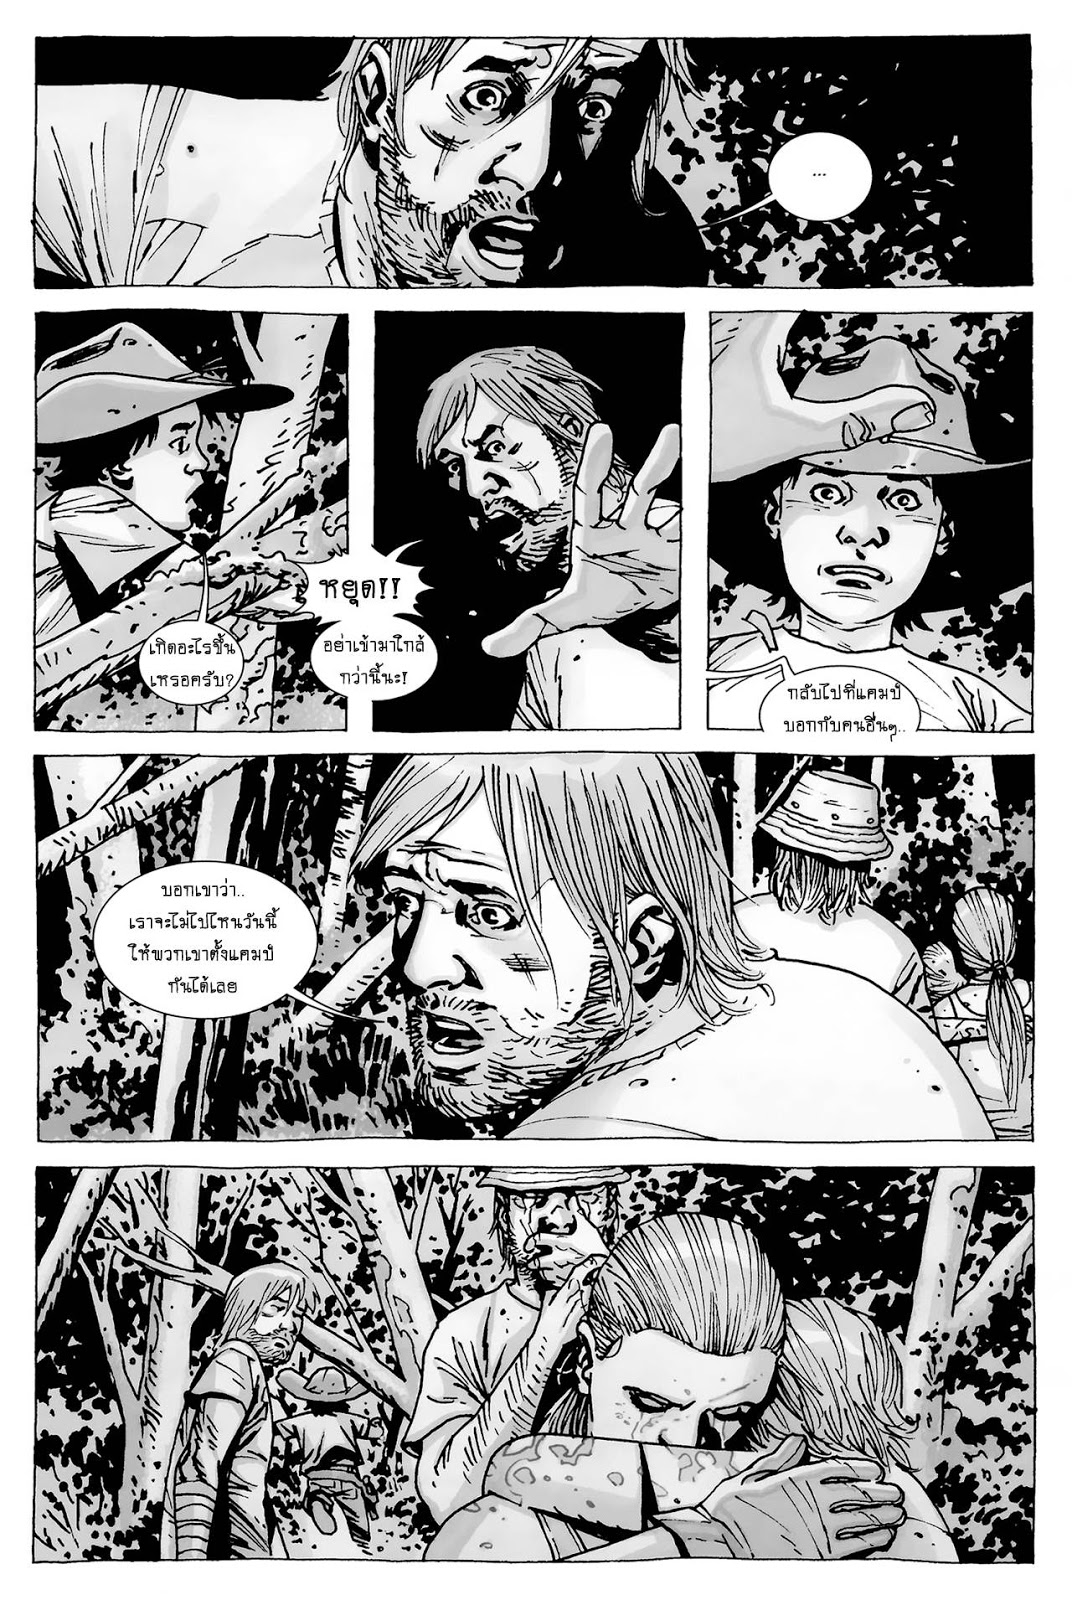 The Walking Dead 61-Fear The Hunters#1